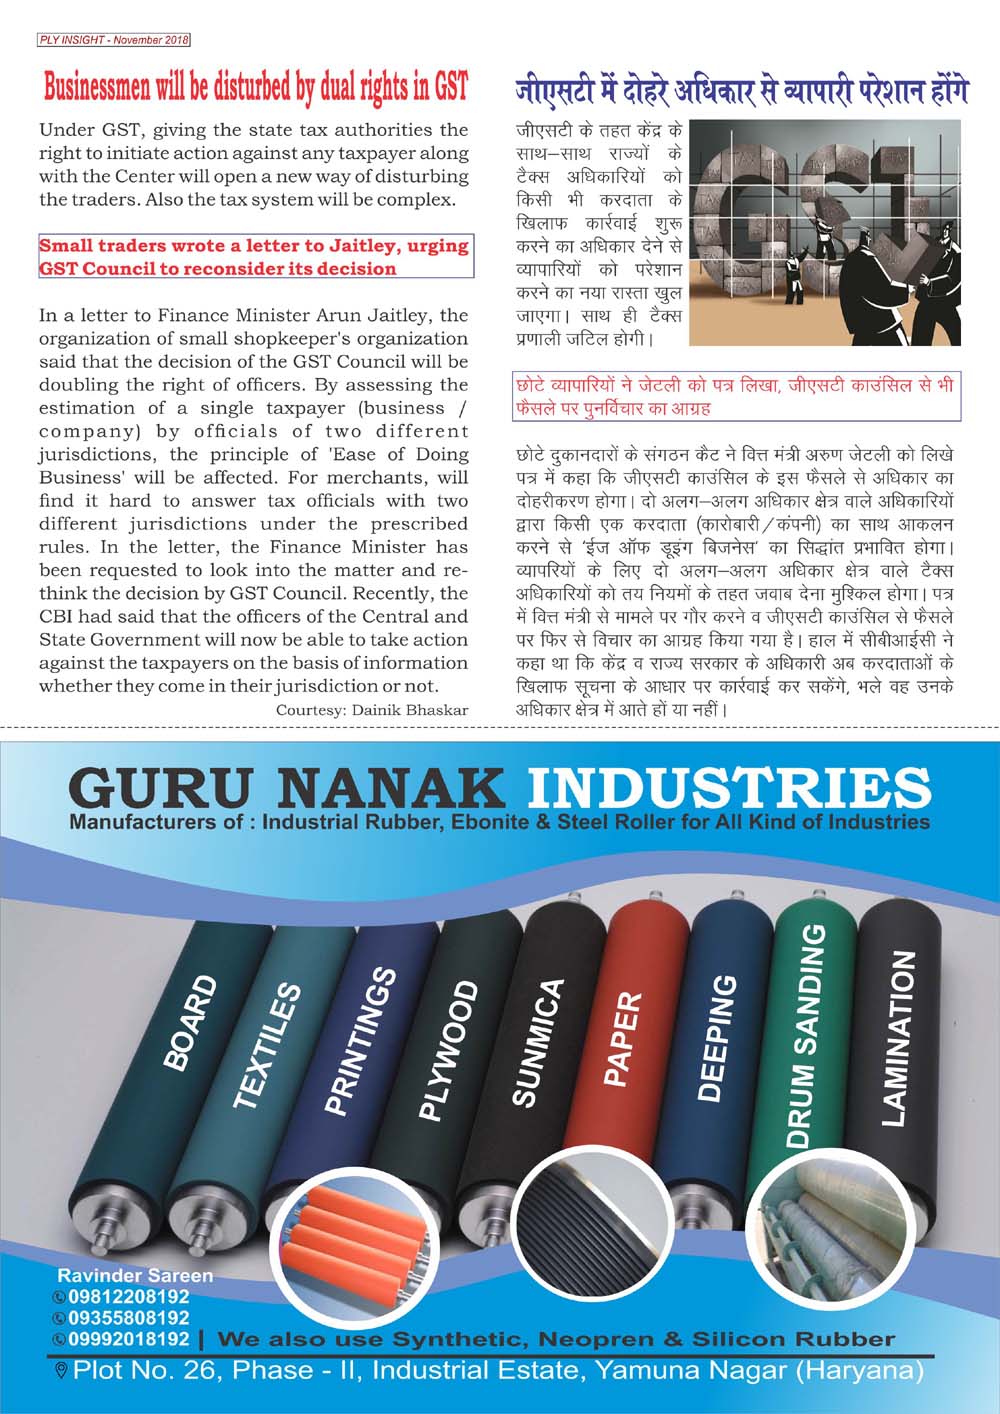 Guru Nanak Industries